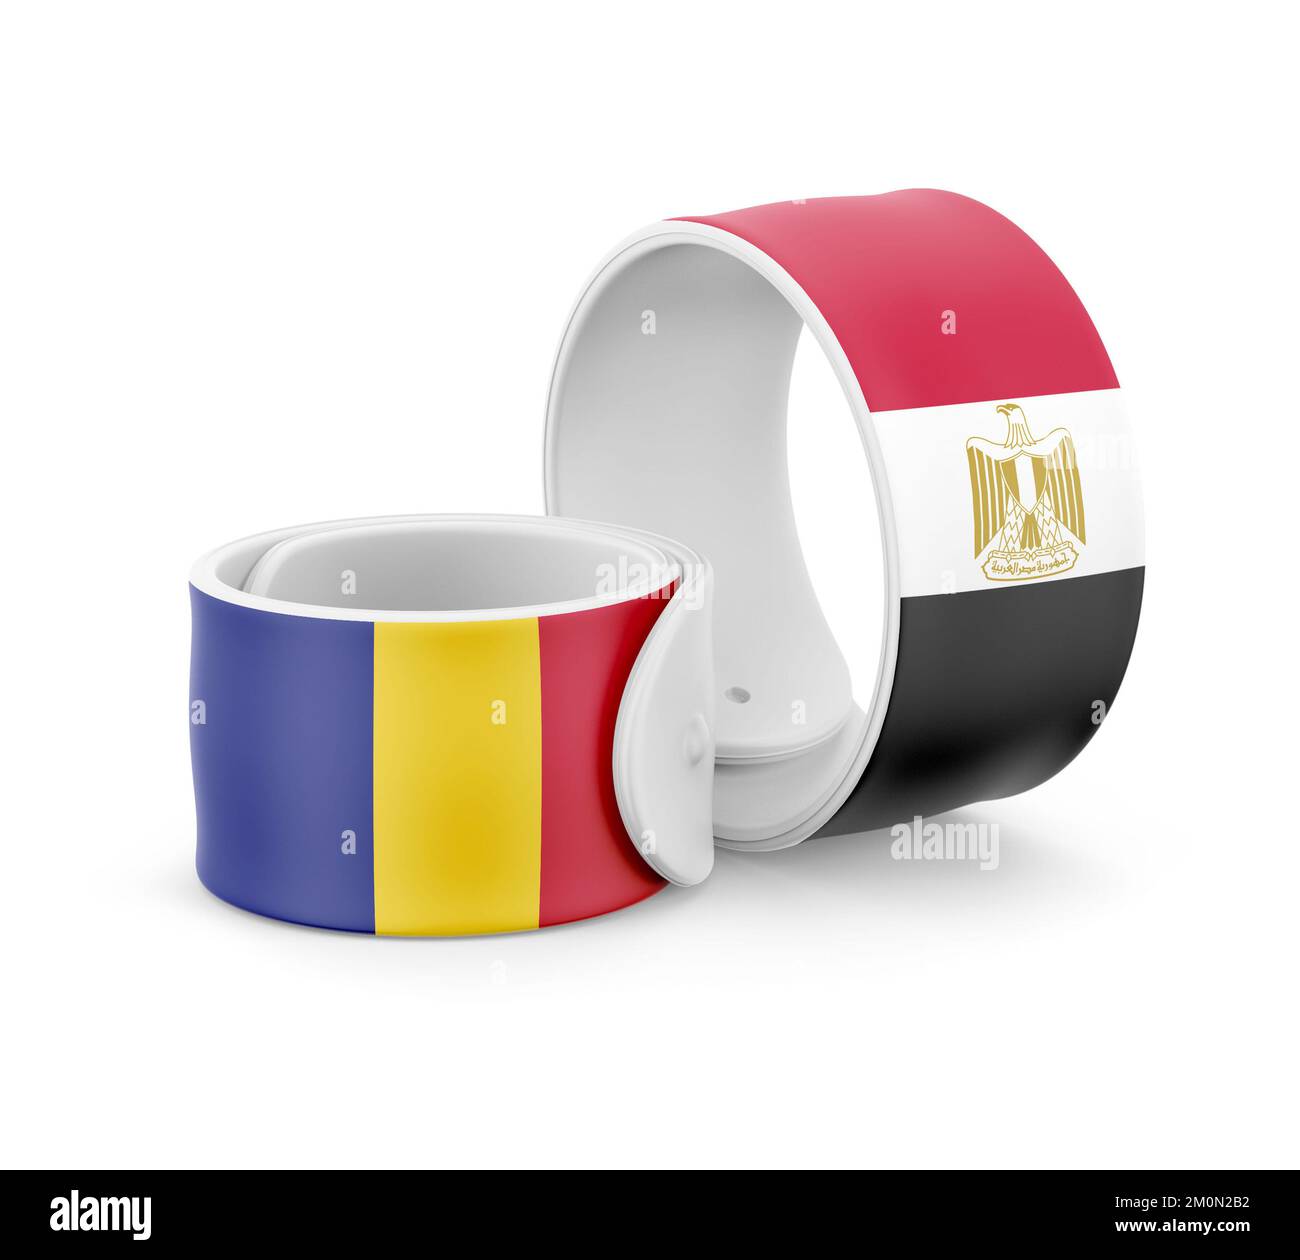 Egypt National Flag for friendship on Bracelet Stock Photo